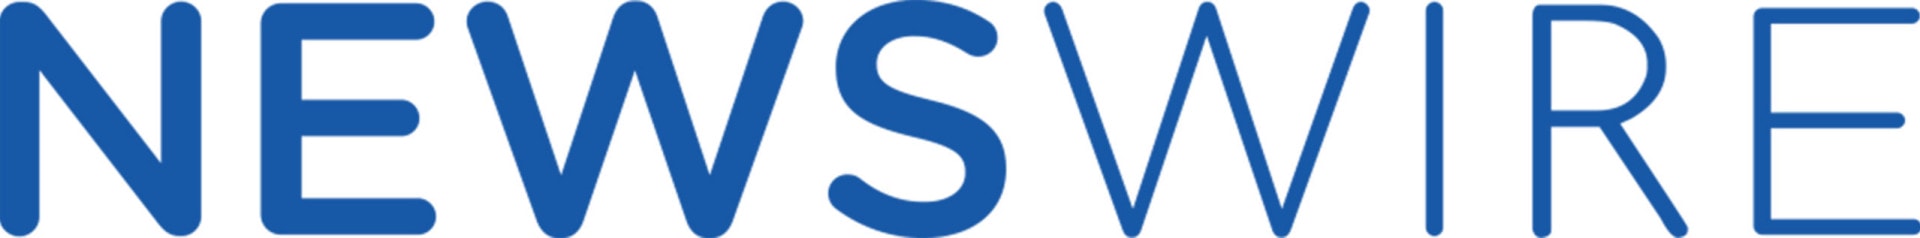 Newswire logo scaled 1